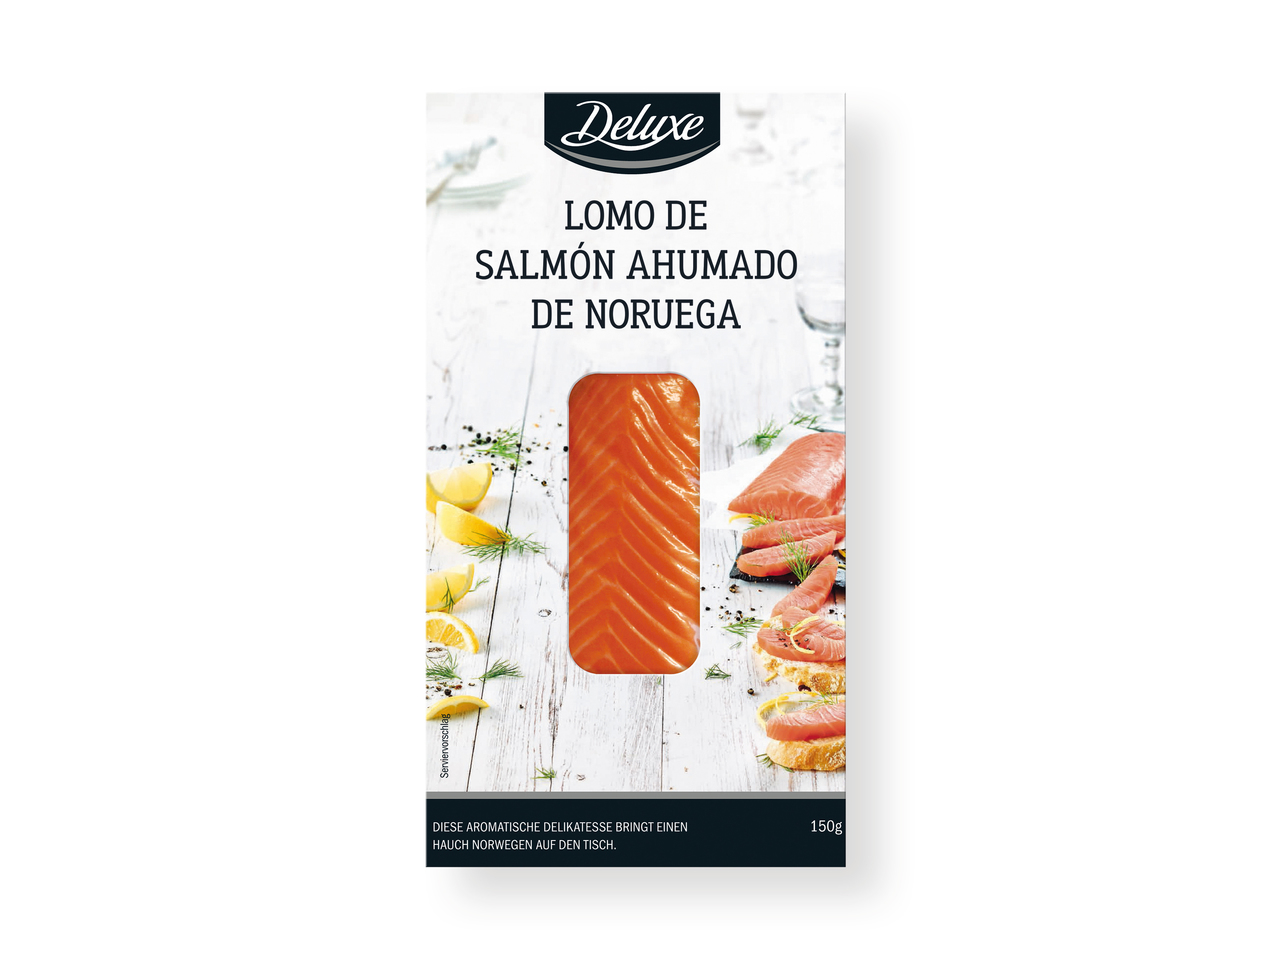 'Deluxe(R)' Lomo de salmón ahumado de Noruega